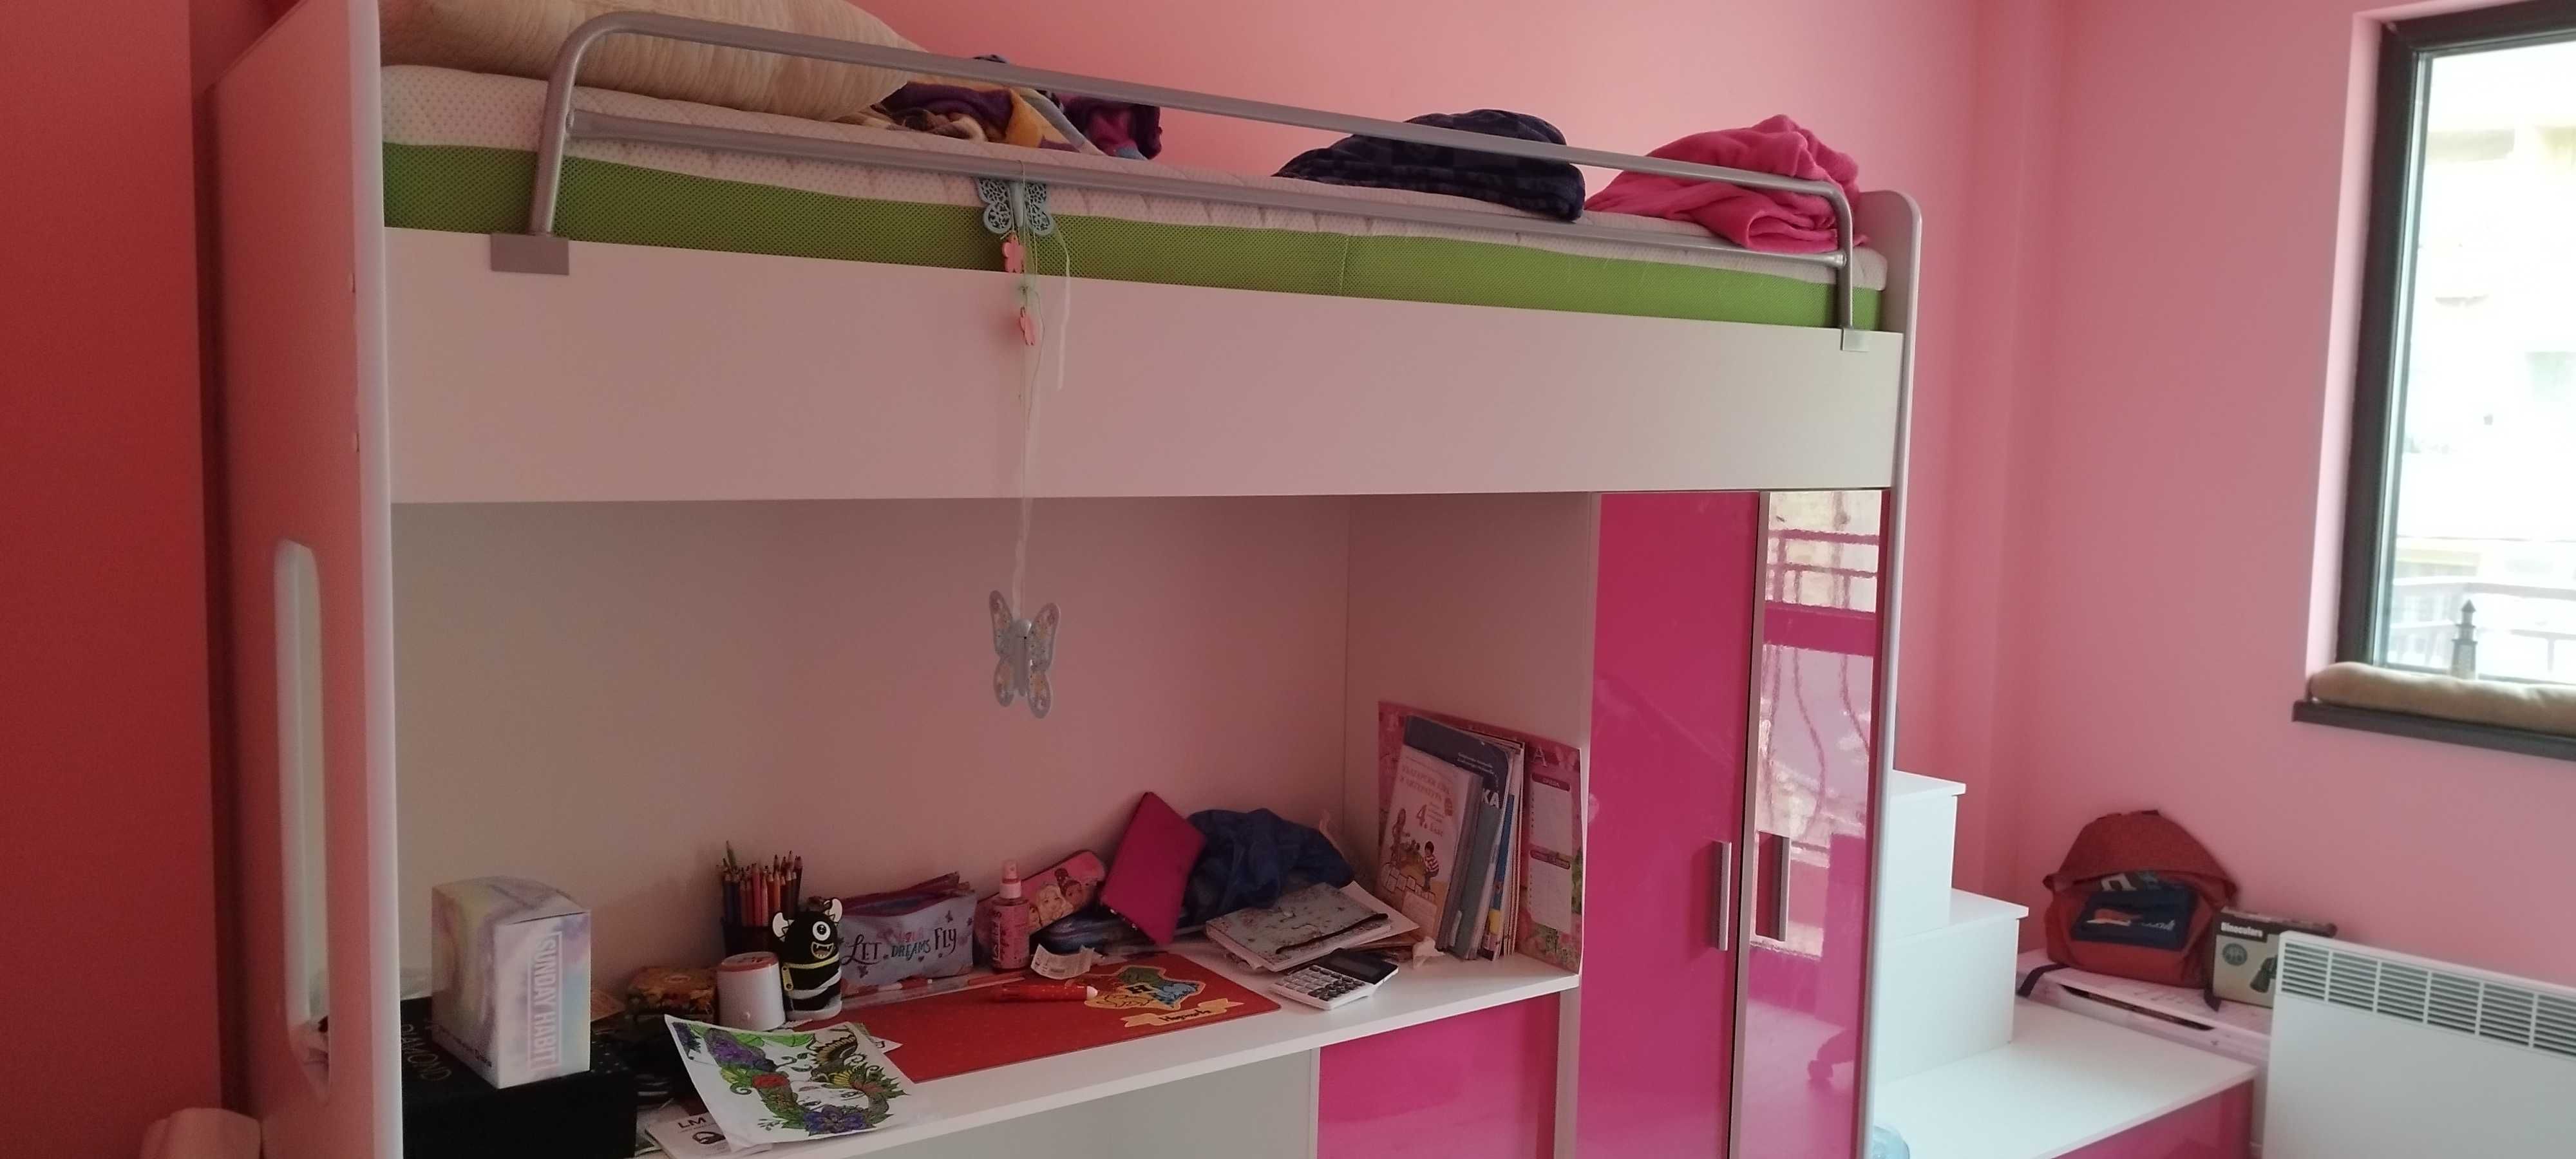 Детско легло Розово, със стълби, бюро и гардероб